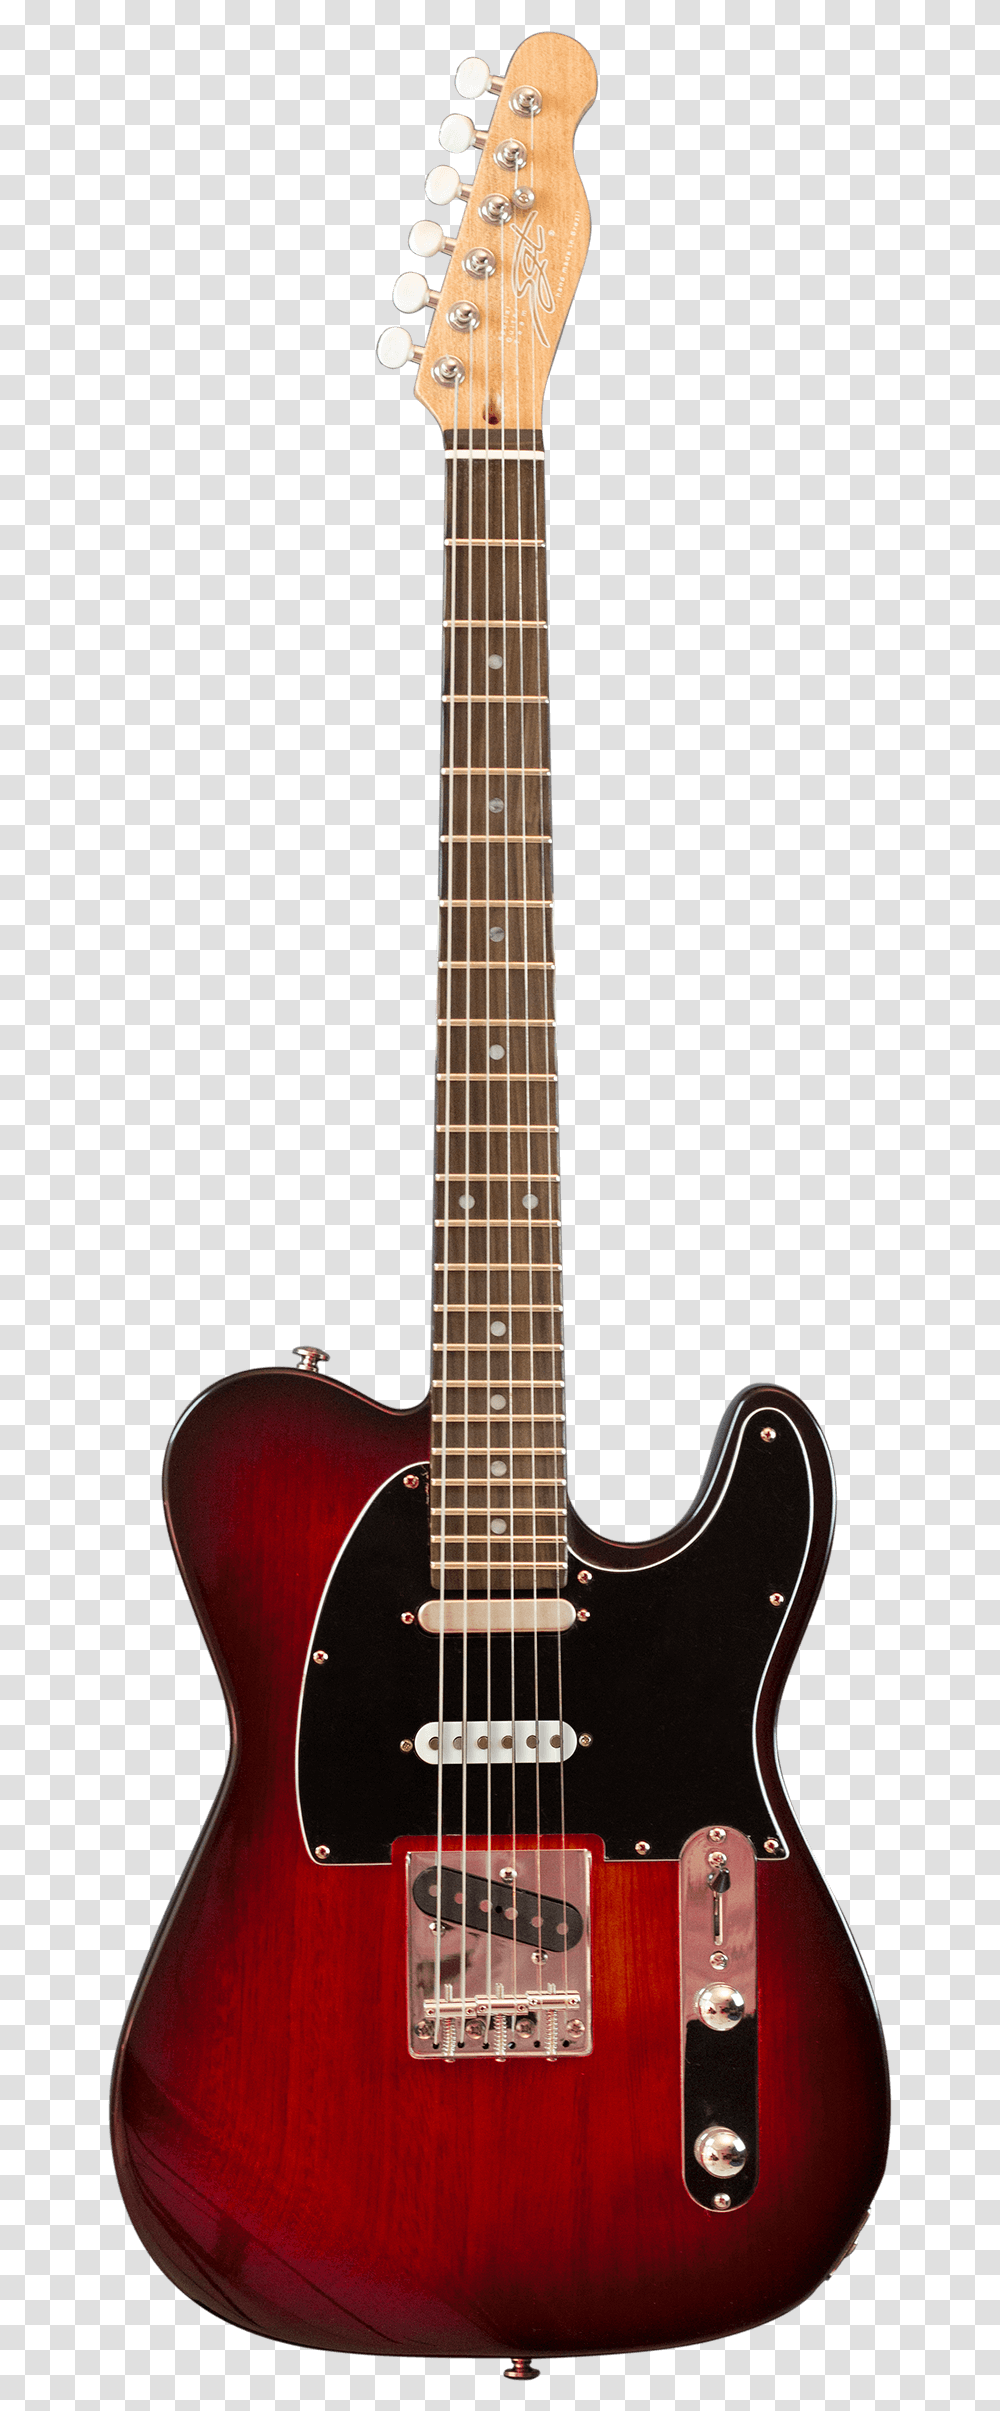 Guitarra Tc Nashville Inteira Guitar, Leisure Activities, Musical Instrument, Bass Guitar, Electric Guitar Transparent Png